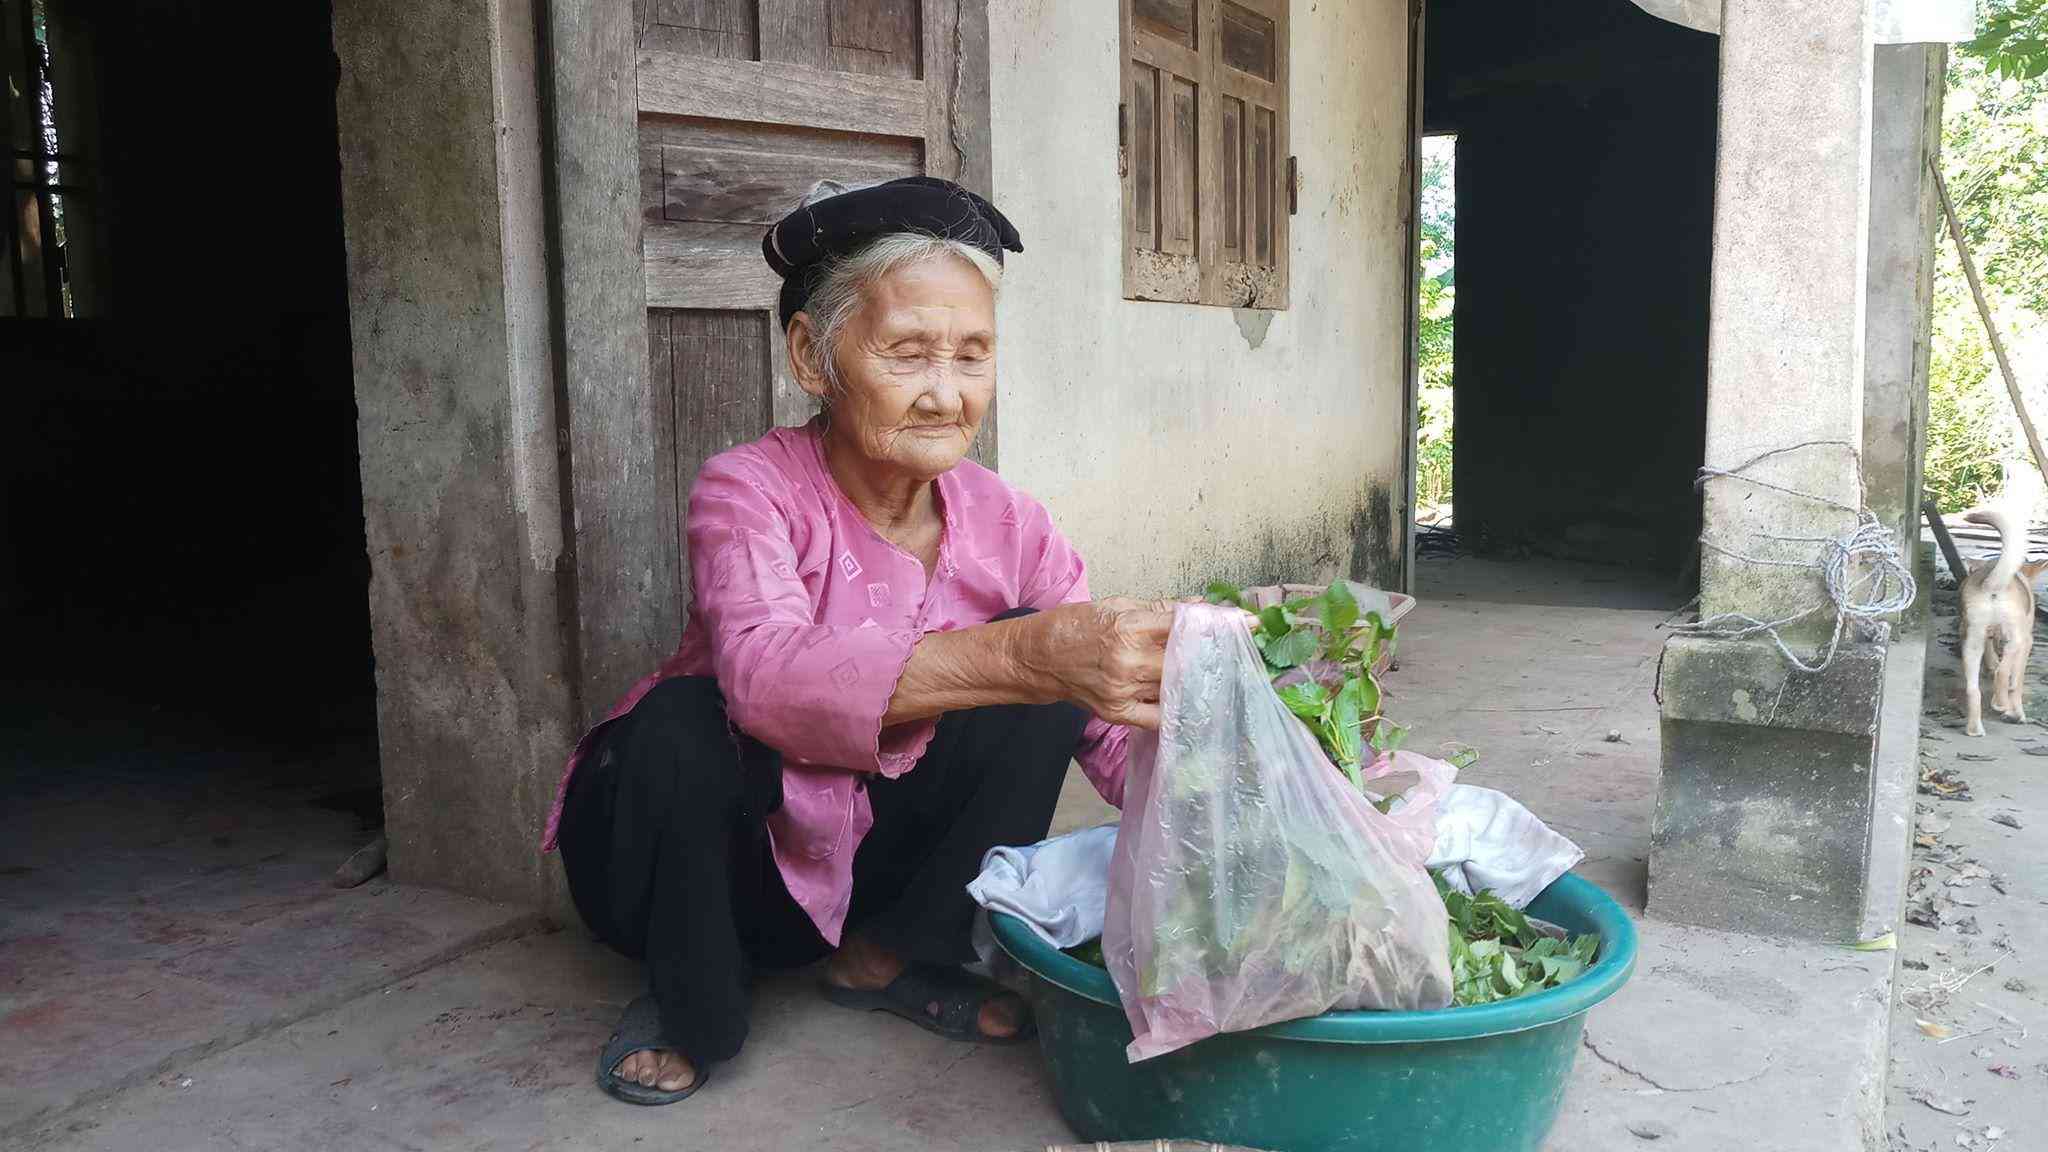 Cụ Đỗ Thị Mơ (83 tuổi) đang còn rất minh mẫn và khỏe khoắn - là nhân vật chính trong video lên xã xin thoát nghèo